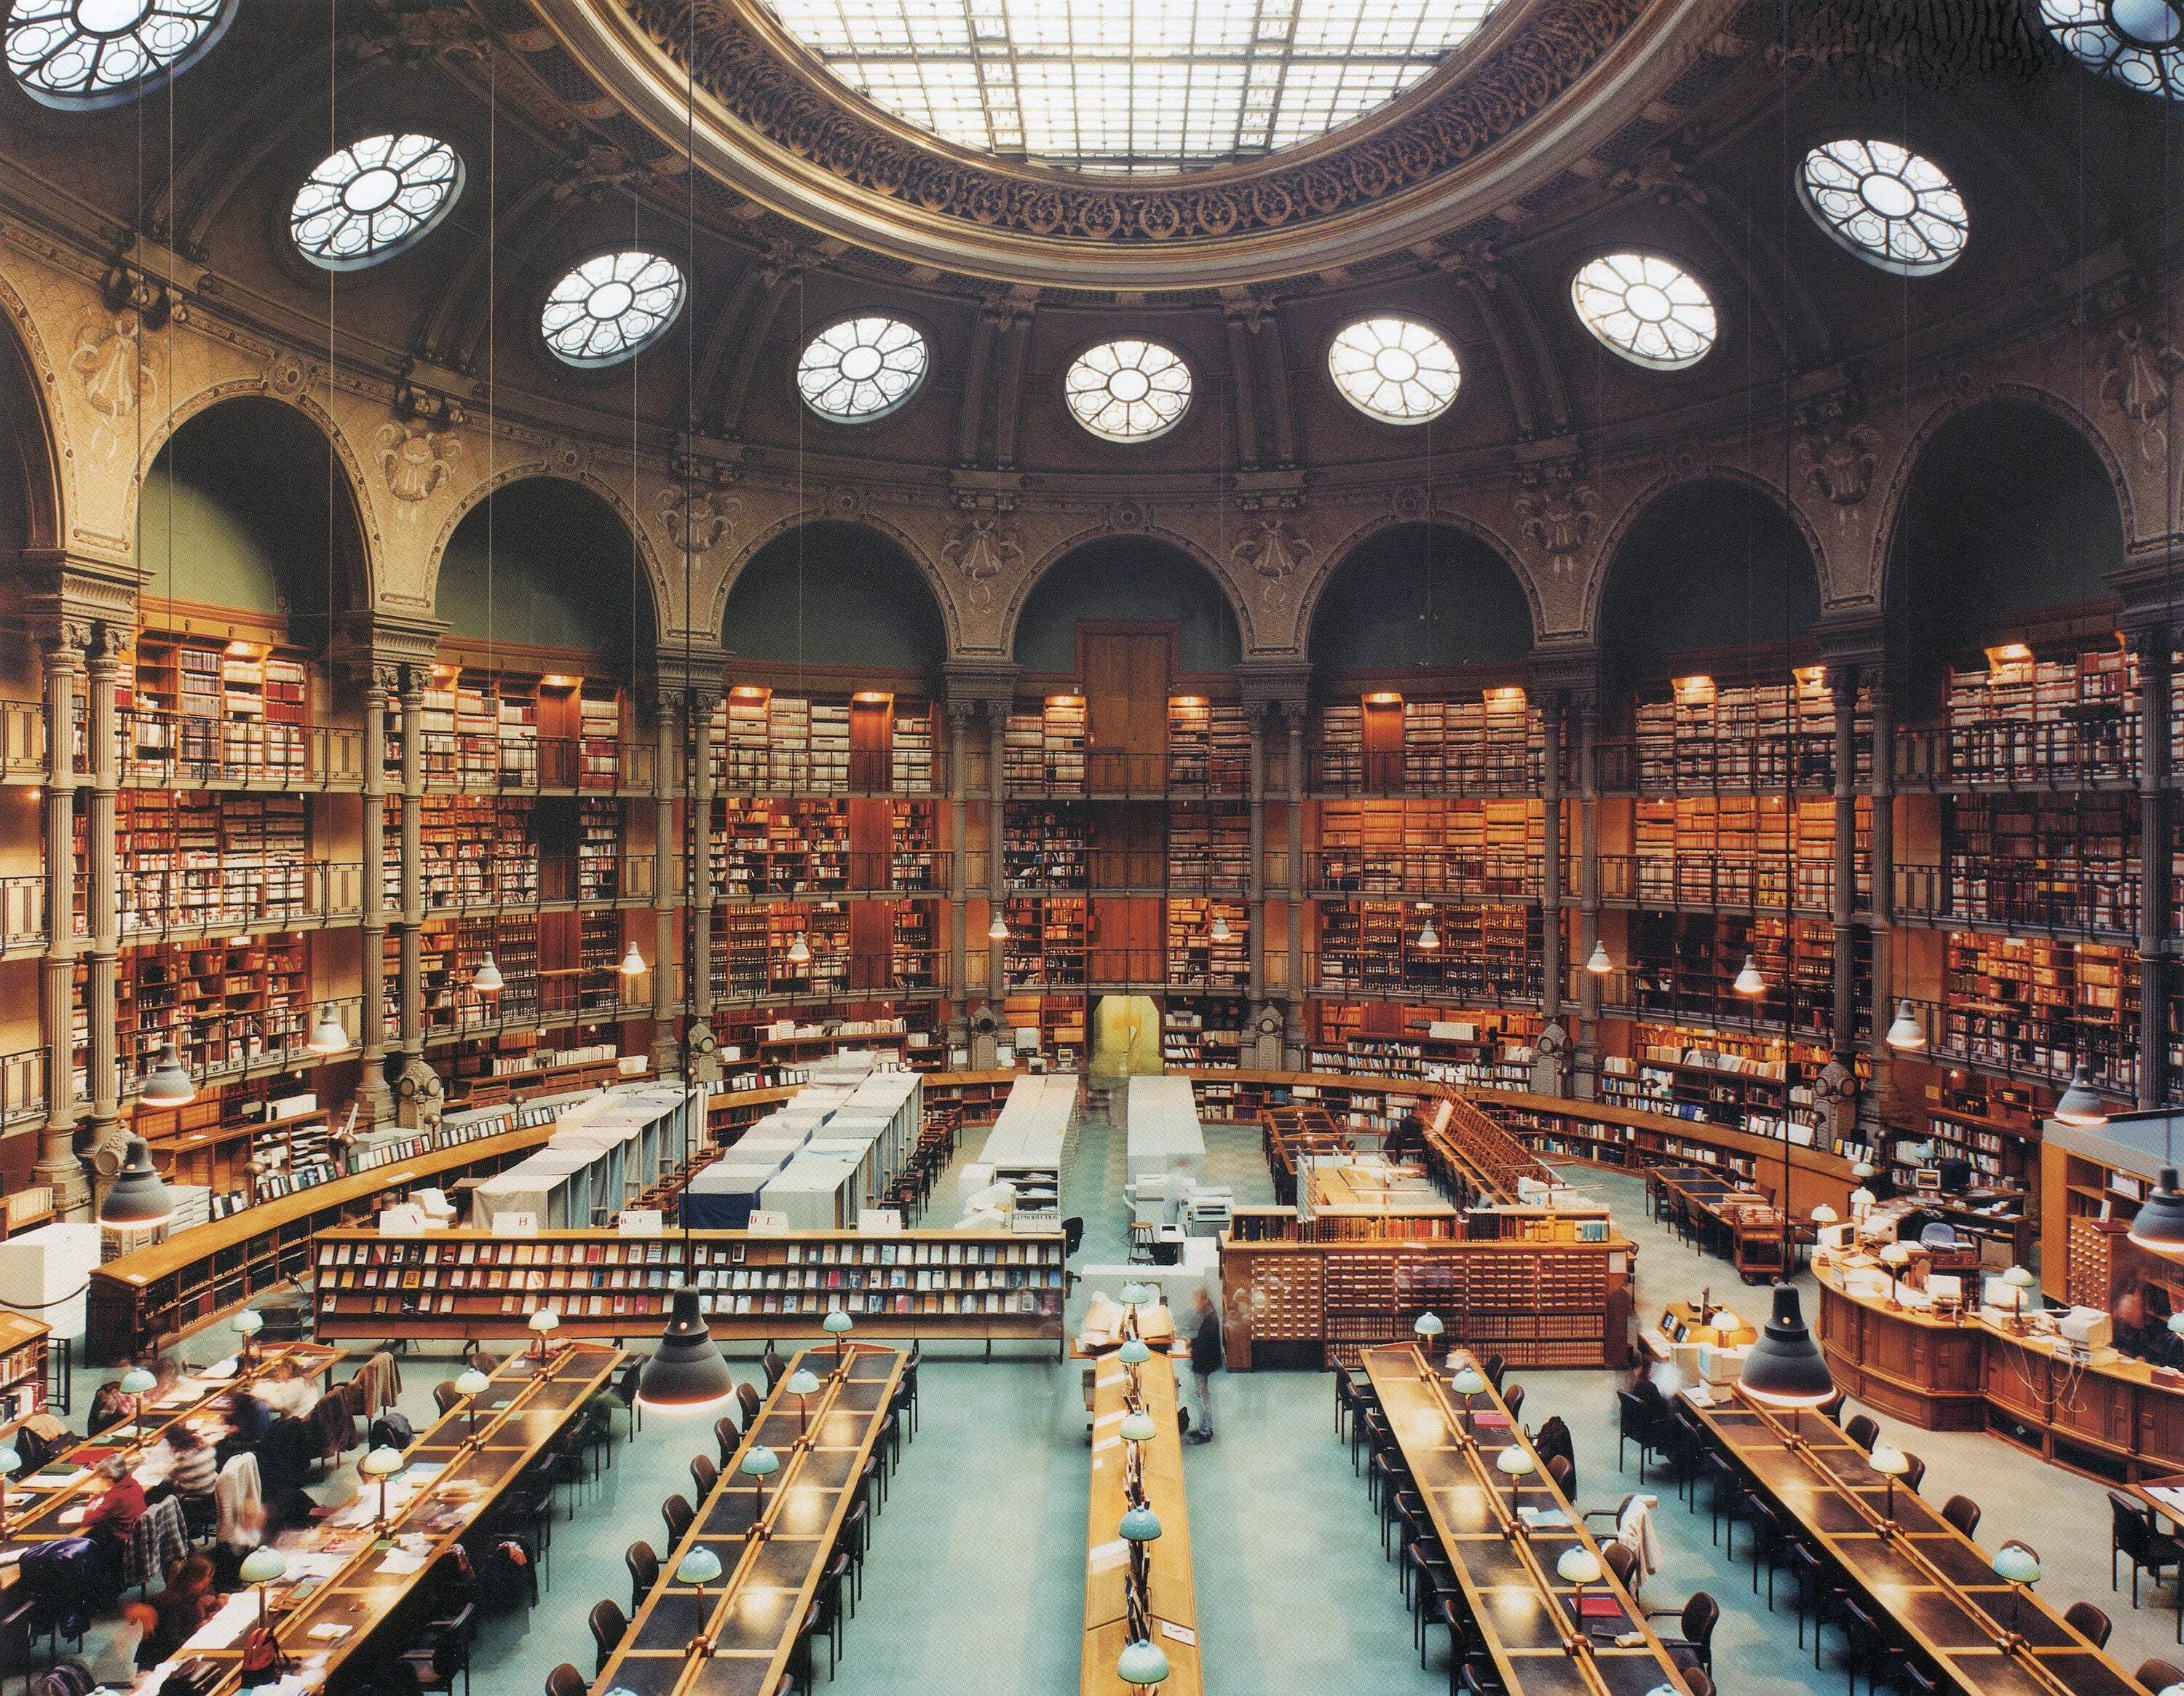 Крупнейшая библиотека европы. Библиотека конгресса США 19 век. Библиотека конгресса Вашингтон. Читальный зал библиотеки конгресса США. Национальная библиотека конгресса США внутри.